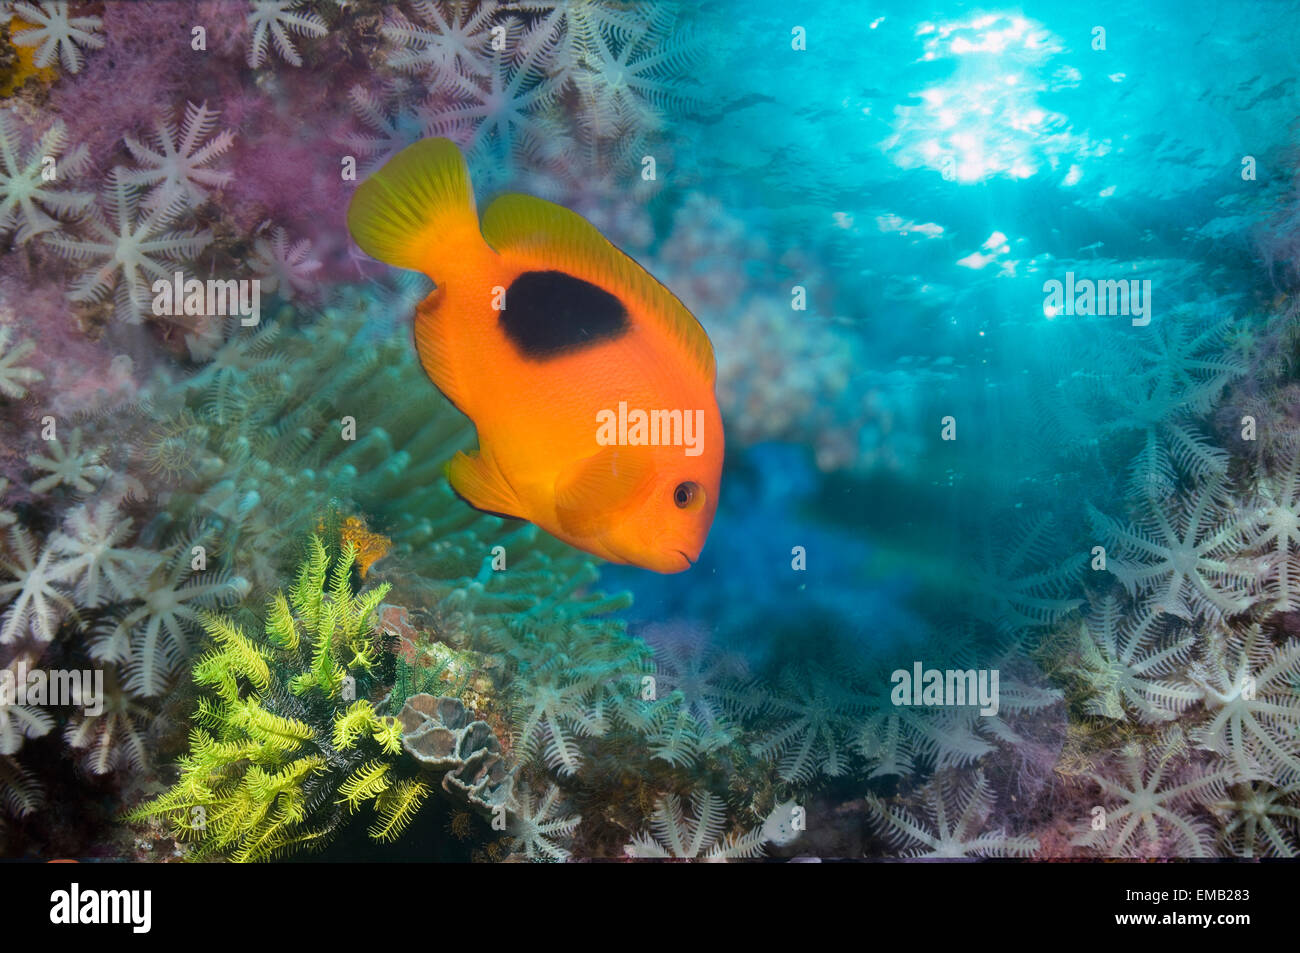 Montage of Red saddleback anemonefish Stock Photo